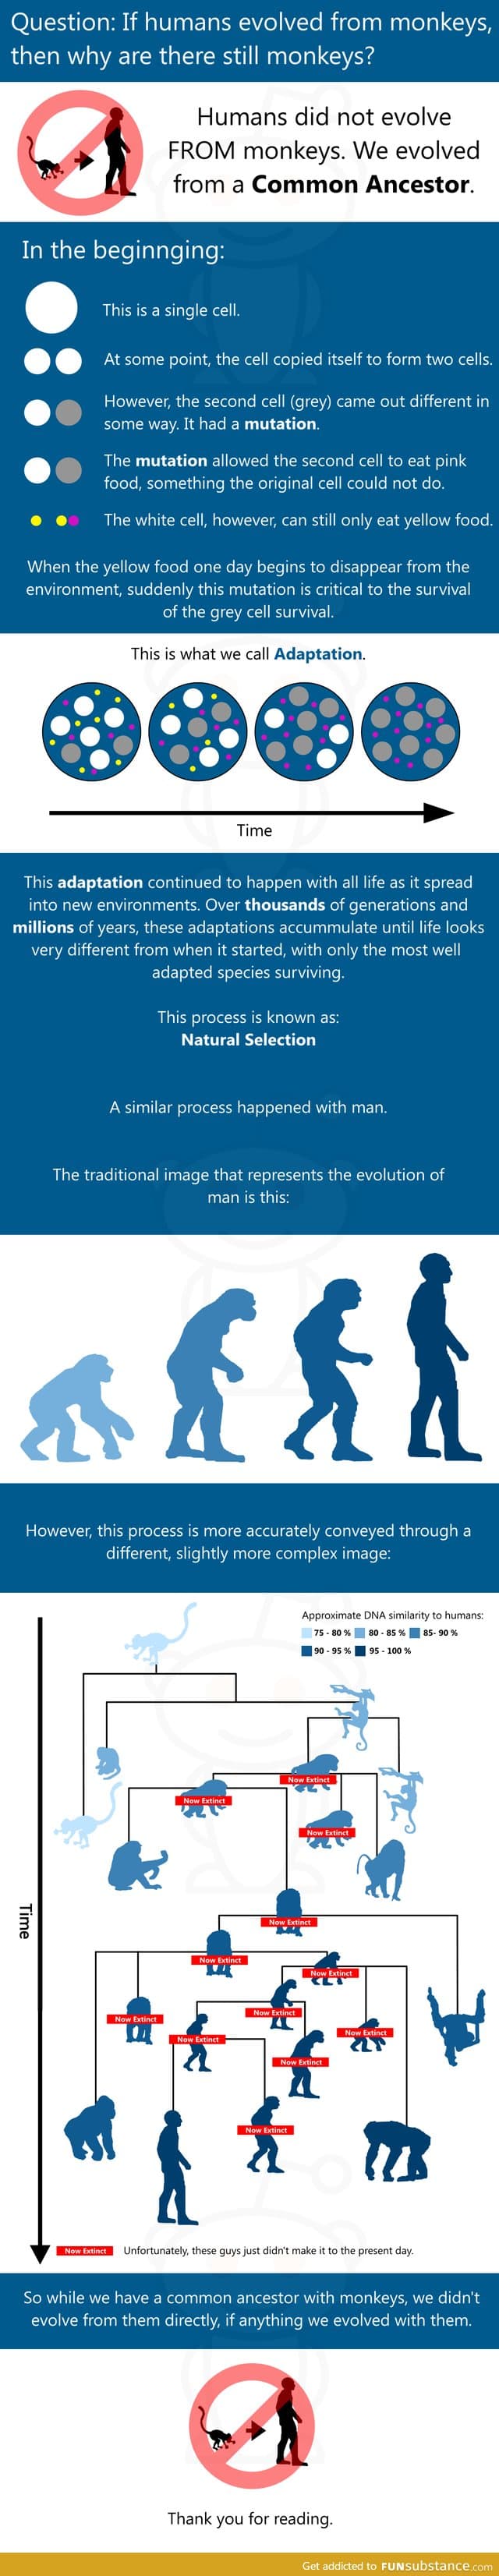 Evolution of humans